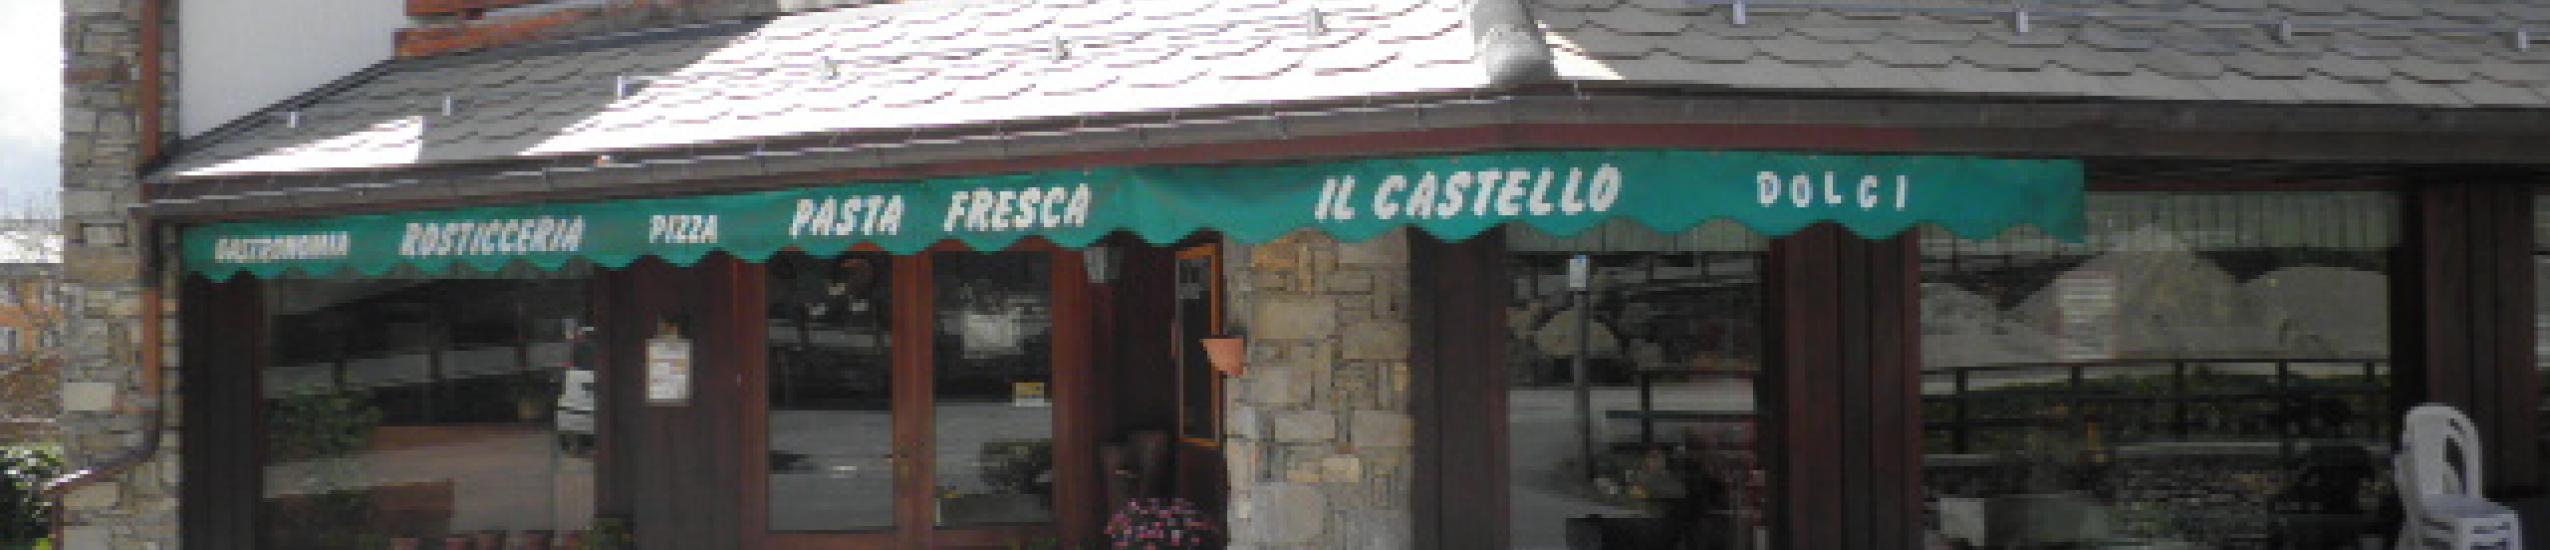 Gastronomia rosticceria Il Castello (0)